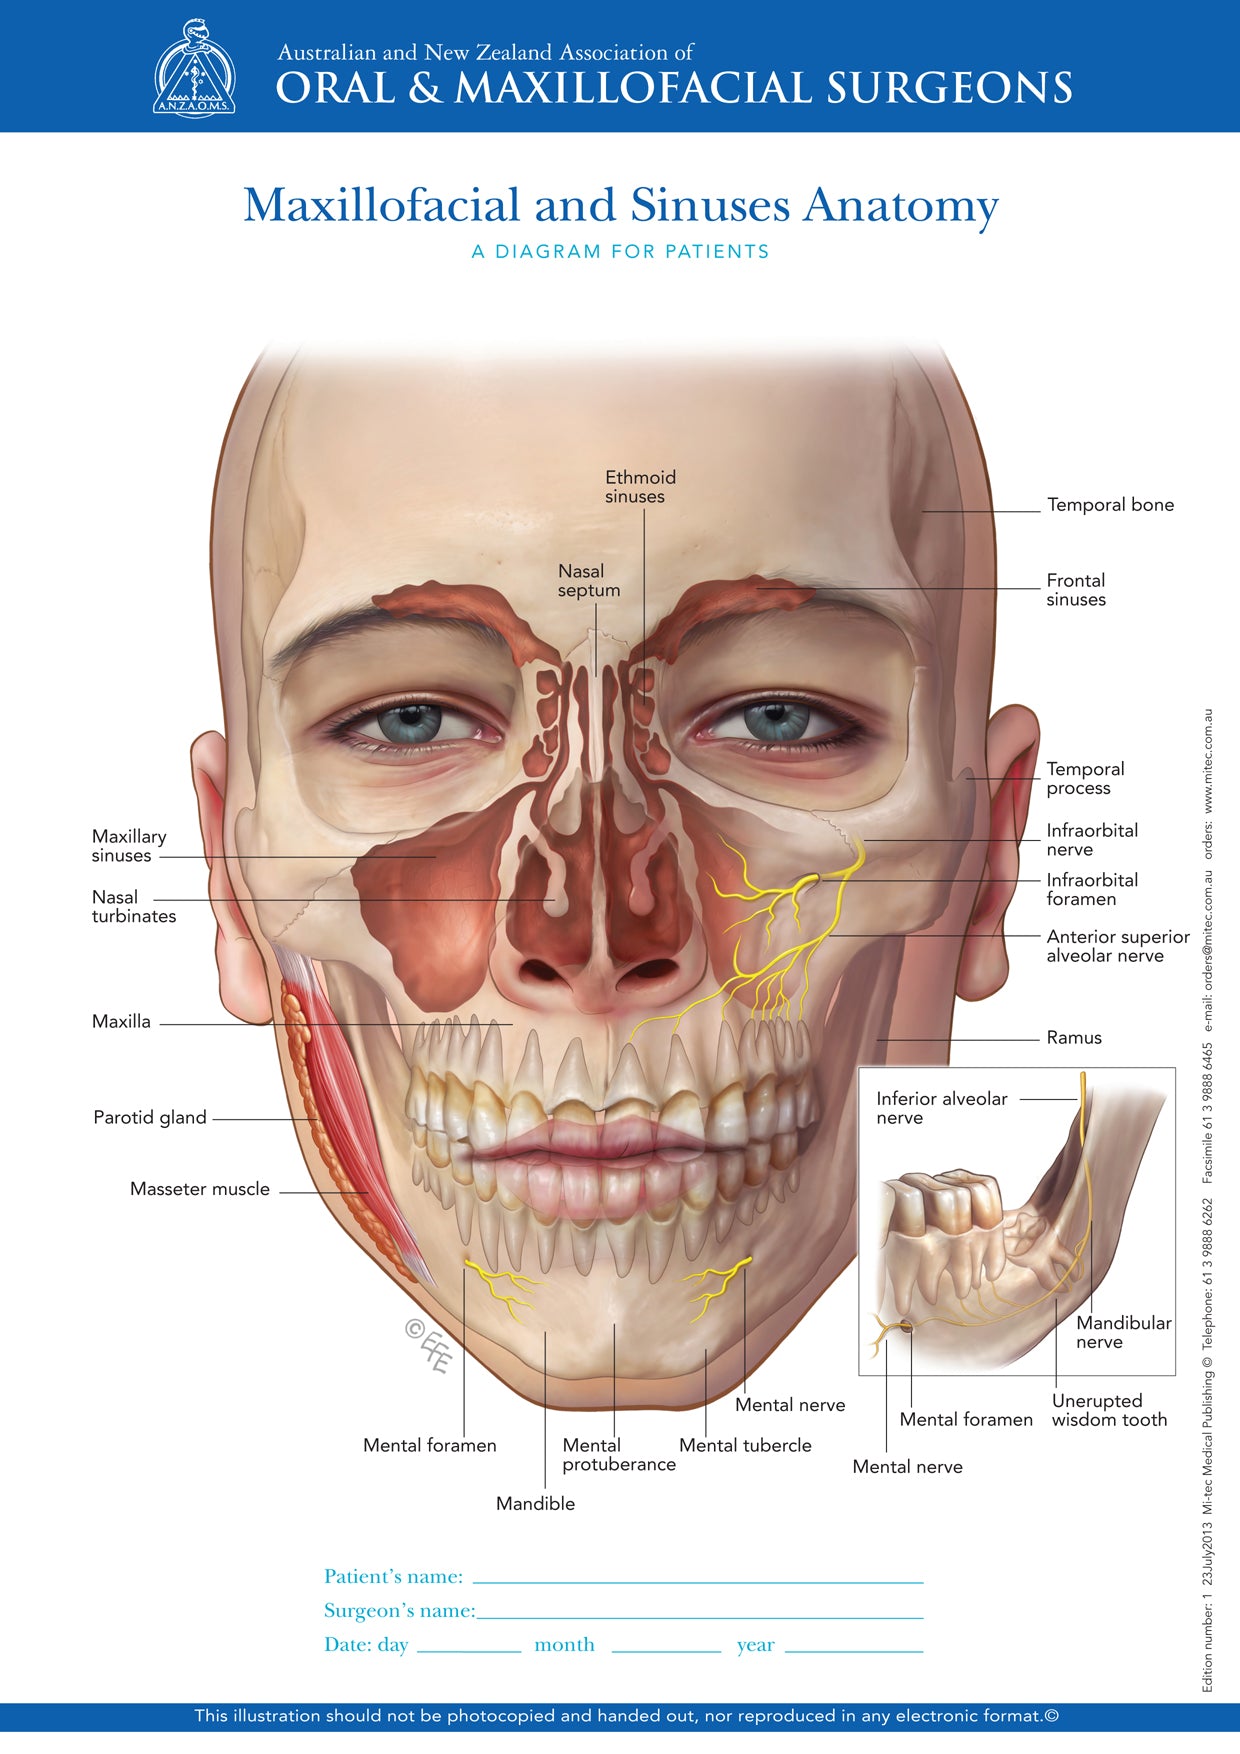 thesis topics oral and maxillofacial surgery